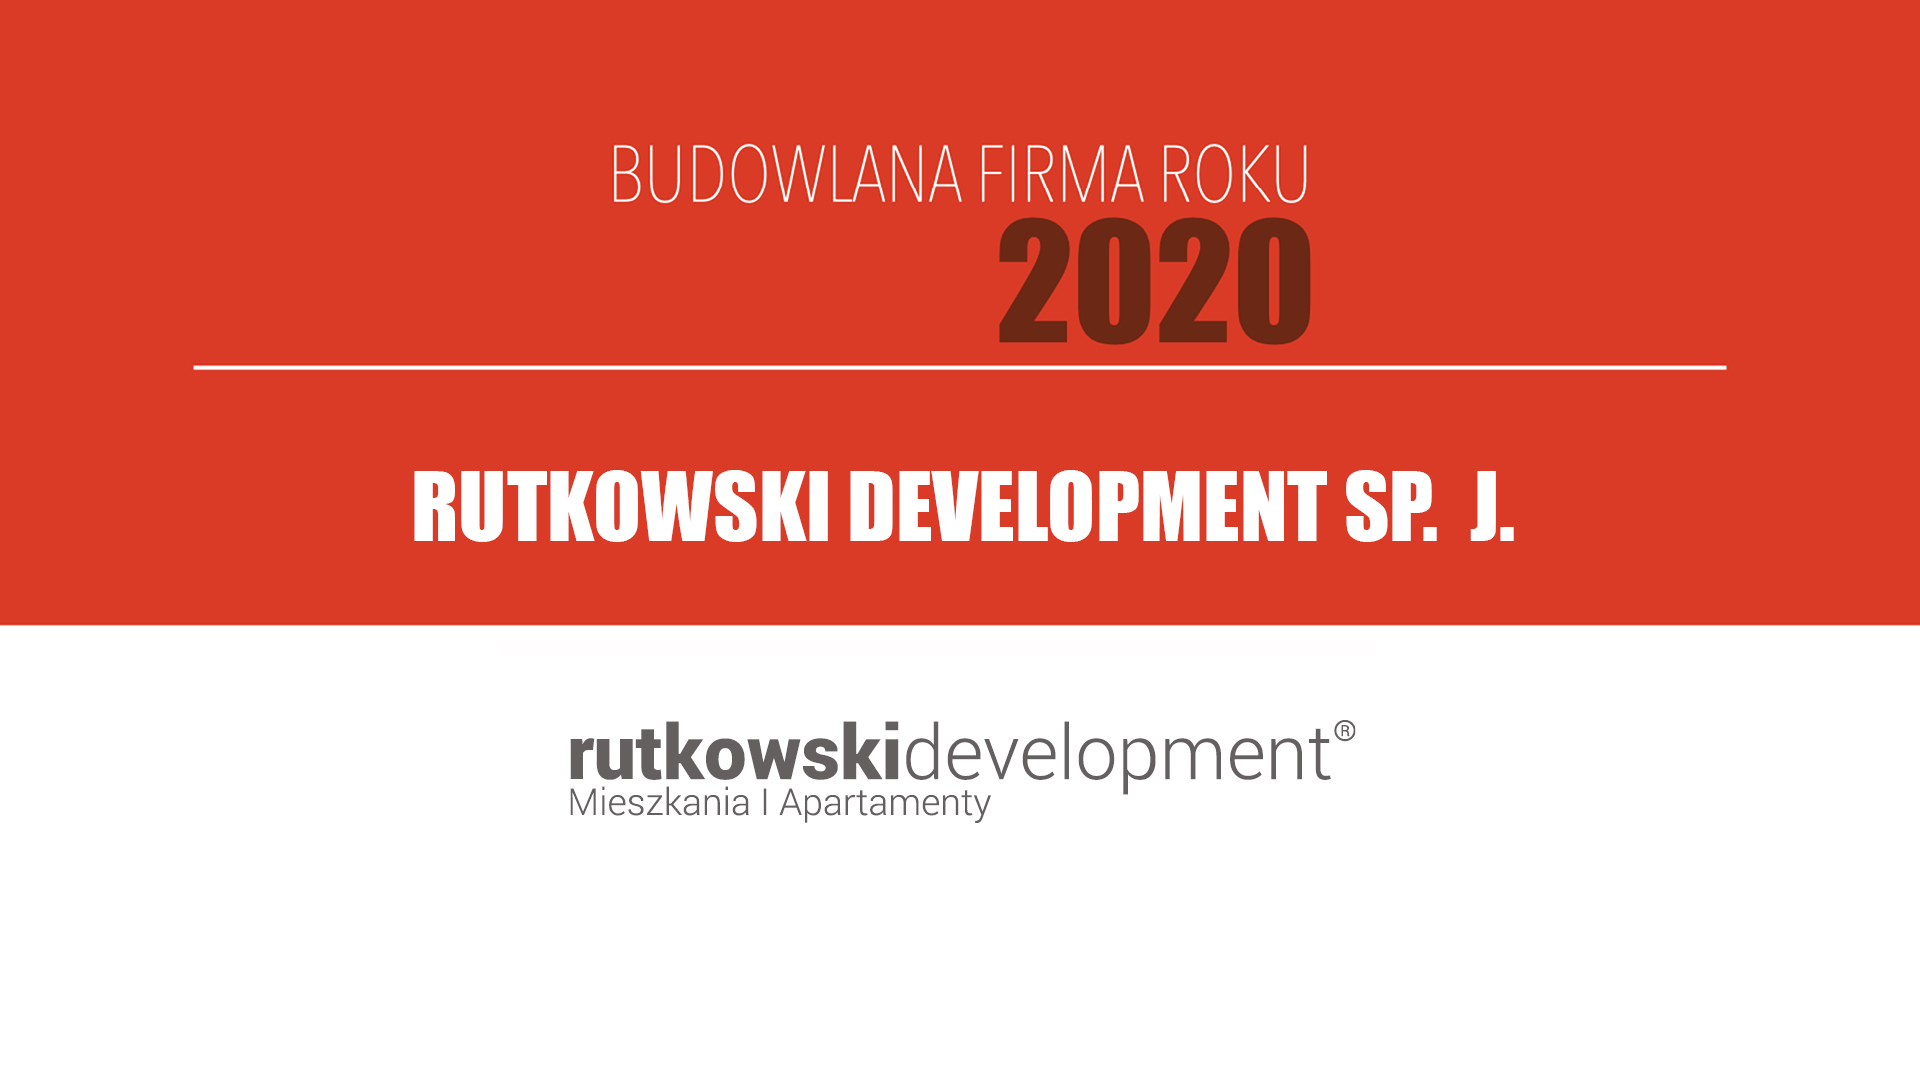 RUTKOWSKI DEVELOPMENT SP. J. – Budowlana Firma Roku 2020